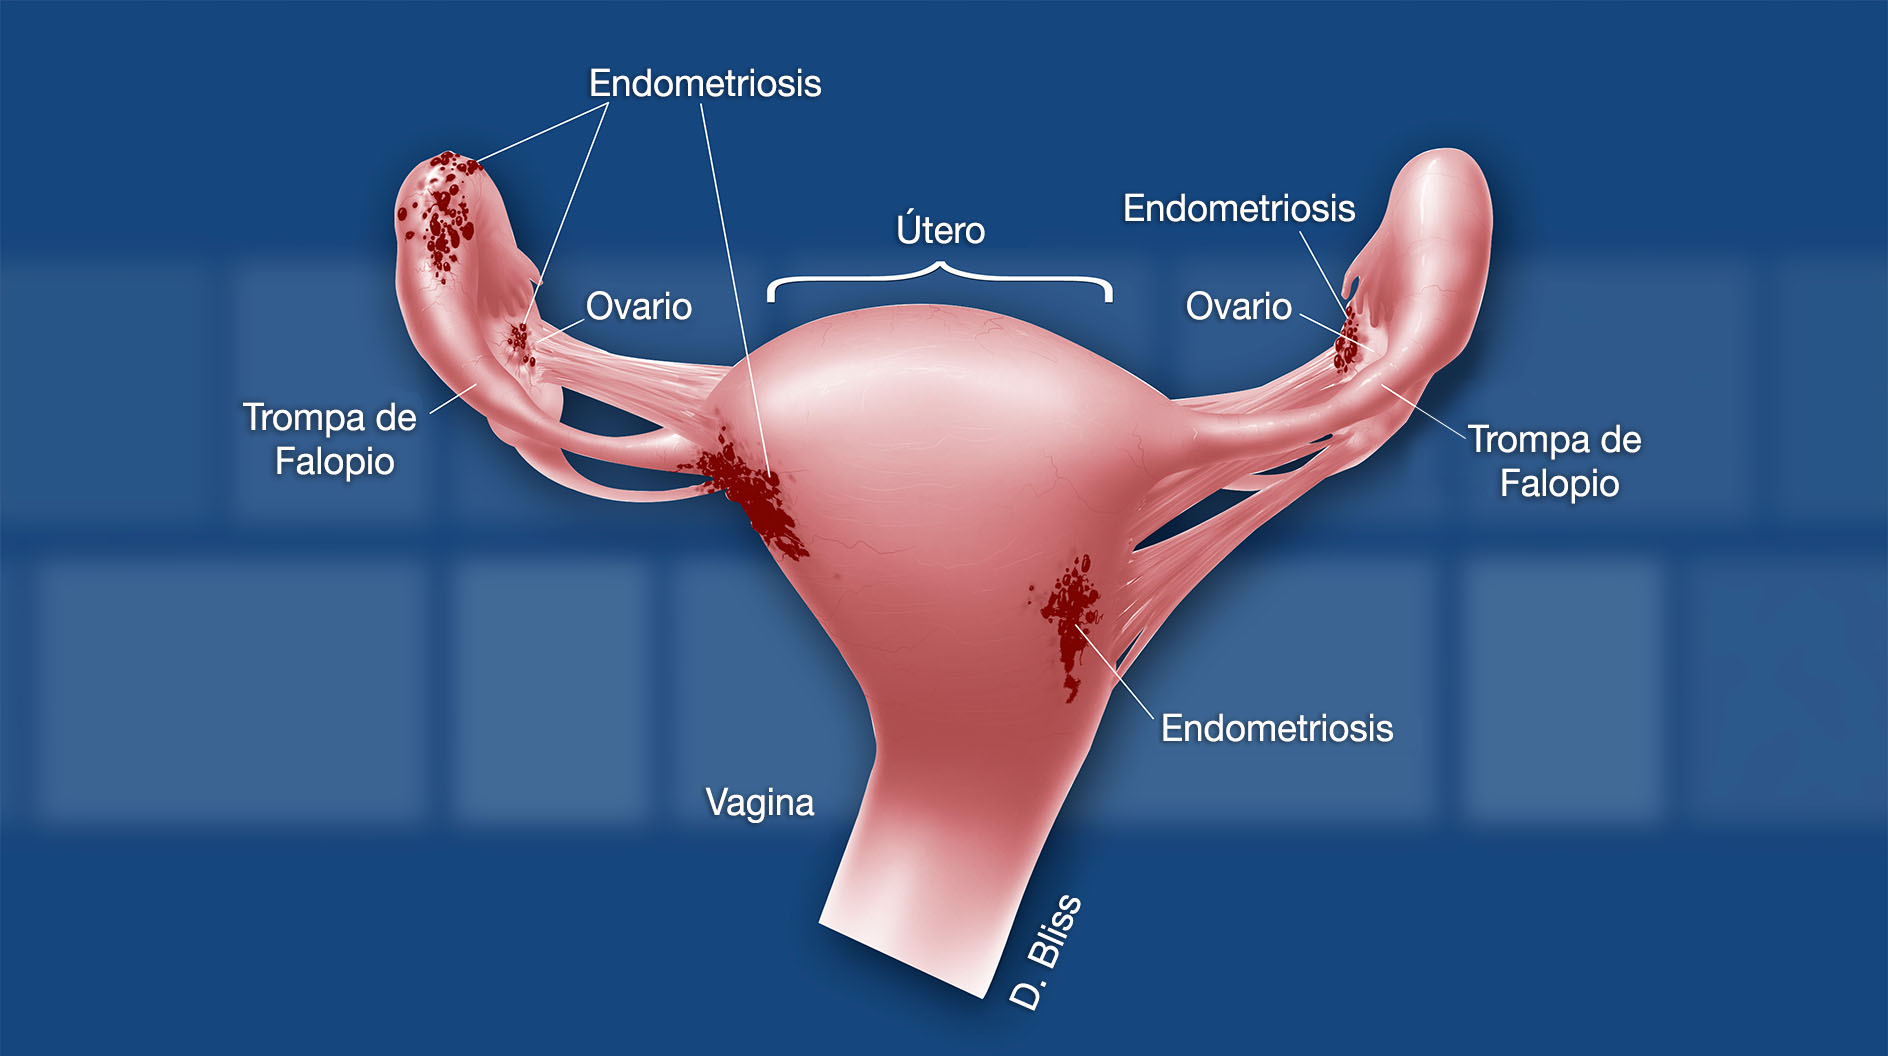 Los órganos reproductores femeninos se muestran con parches rojos de endometriosis ubicados en los ovarios y en el exterior del útero. El útero, las trompas de Falopio, los ovarios, la vagina y las áreas de endometriosis están etiquetados.